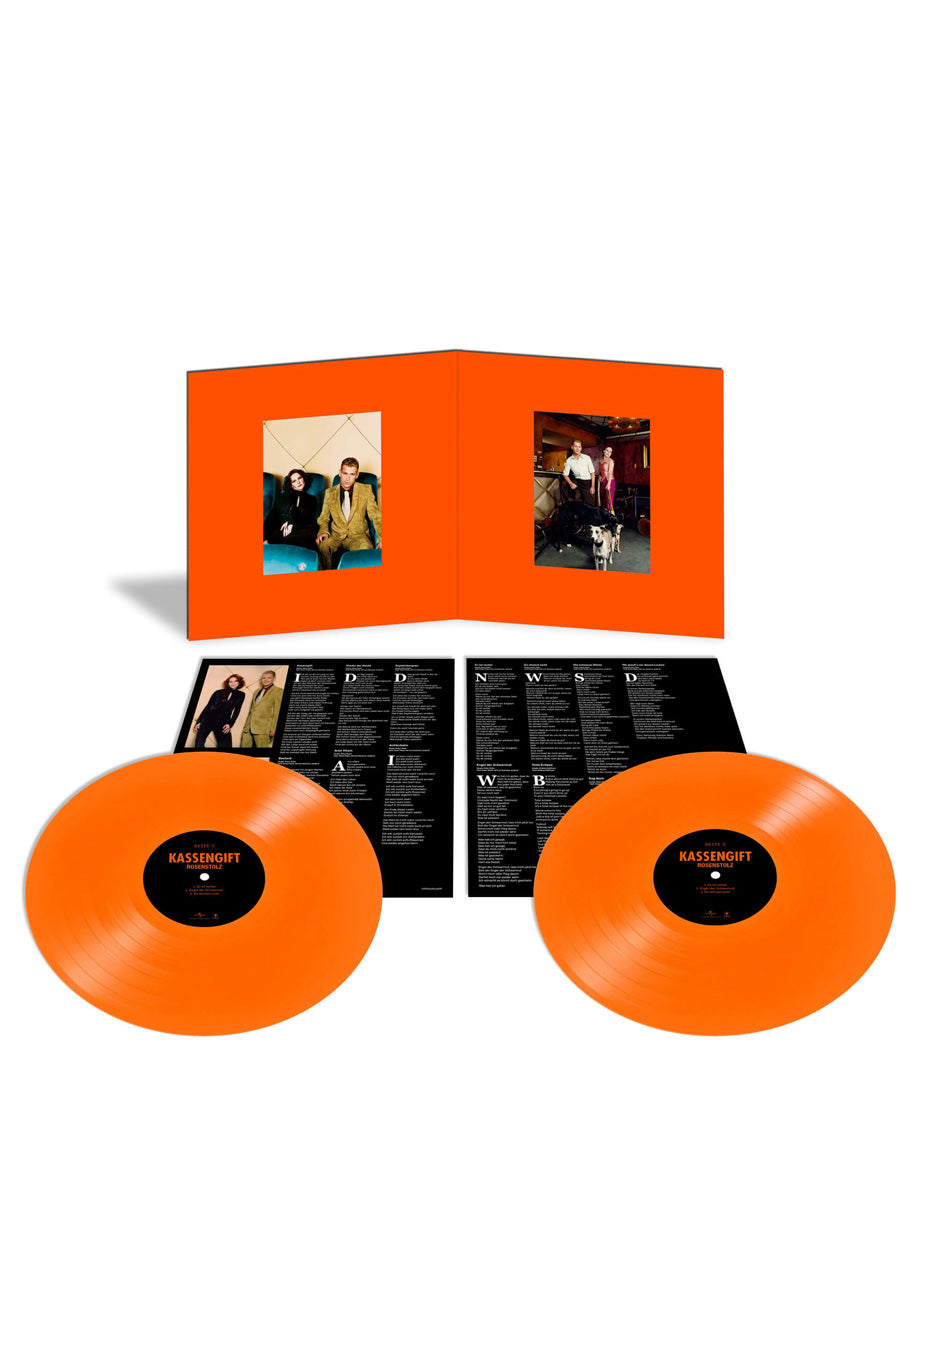 Rosenstolz - Kassengift (Ltd.) Orange - Colored 2 LP